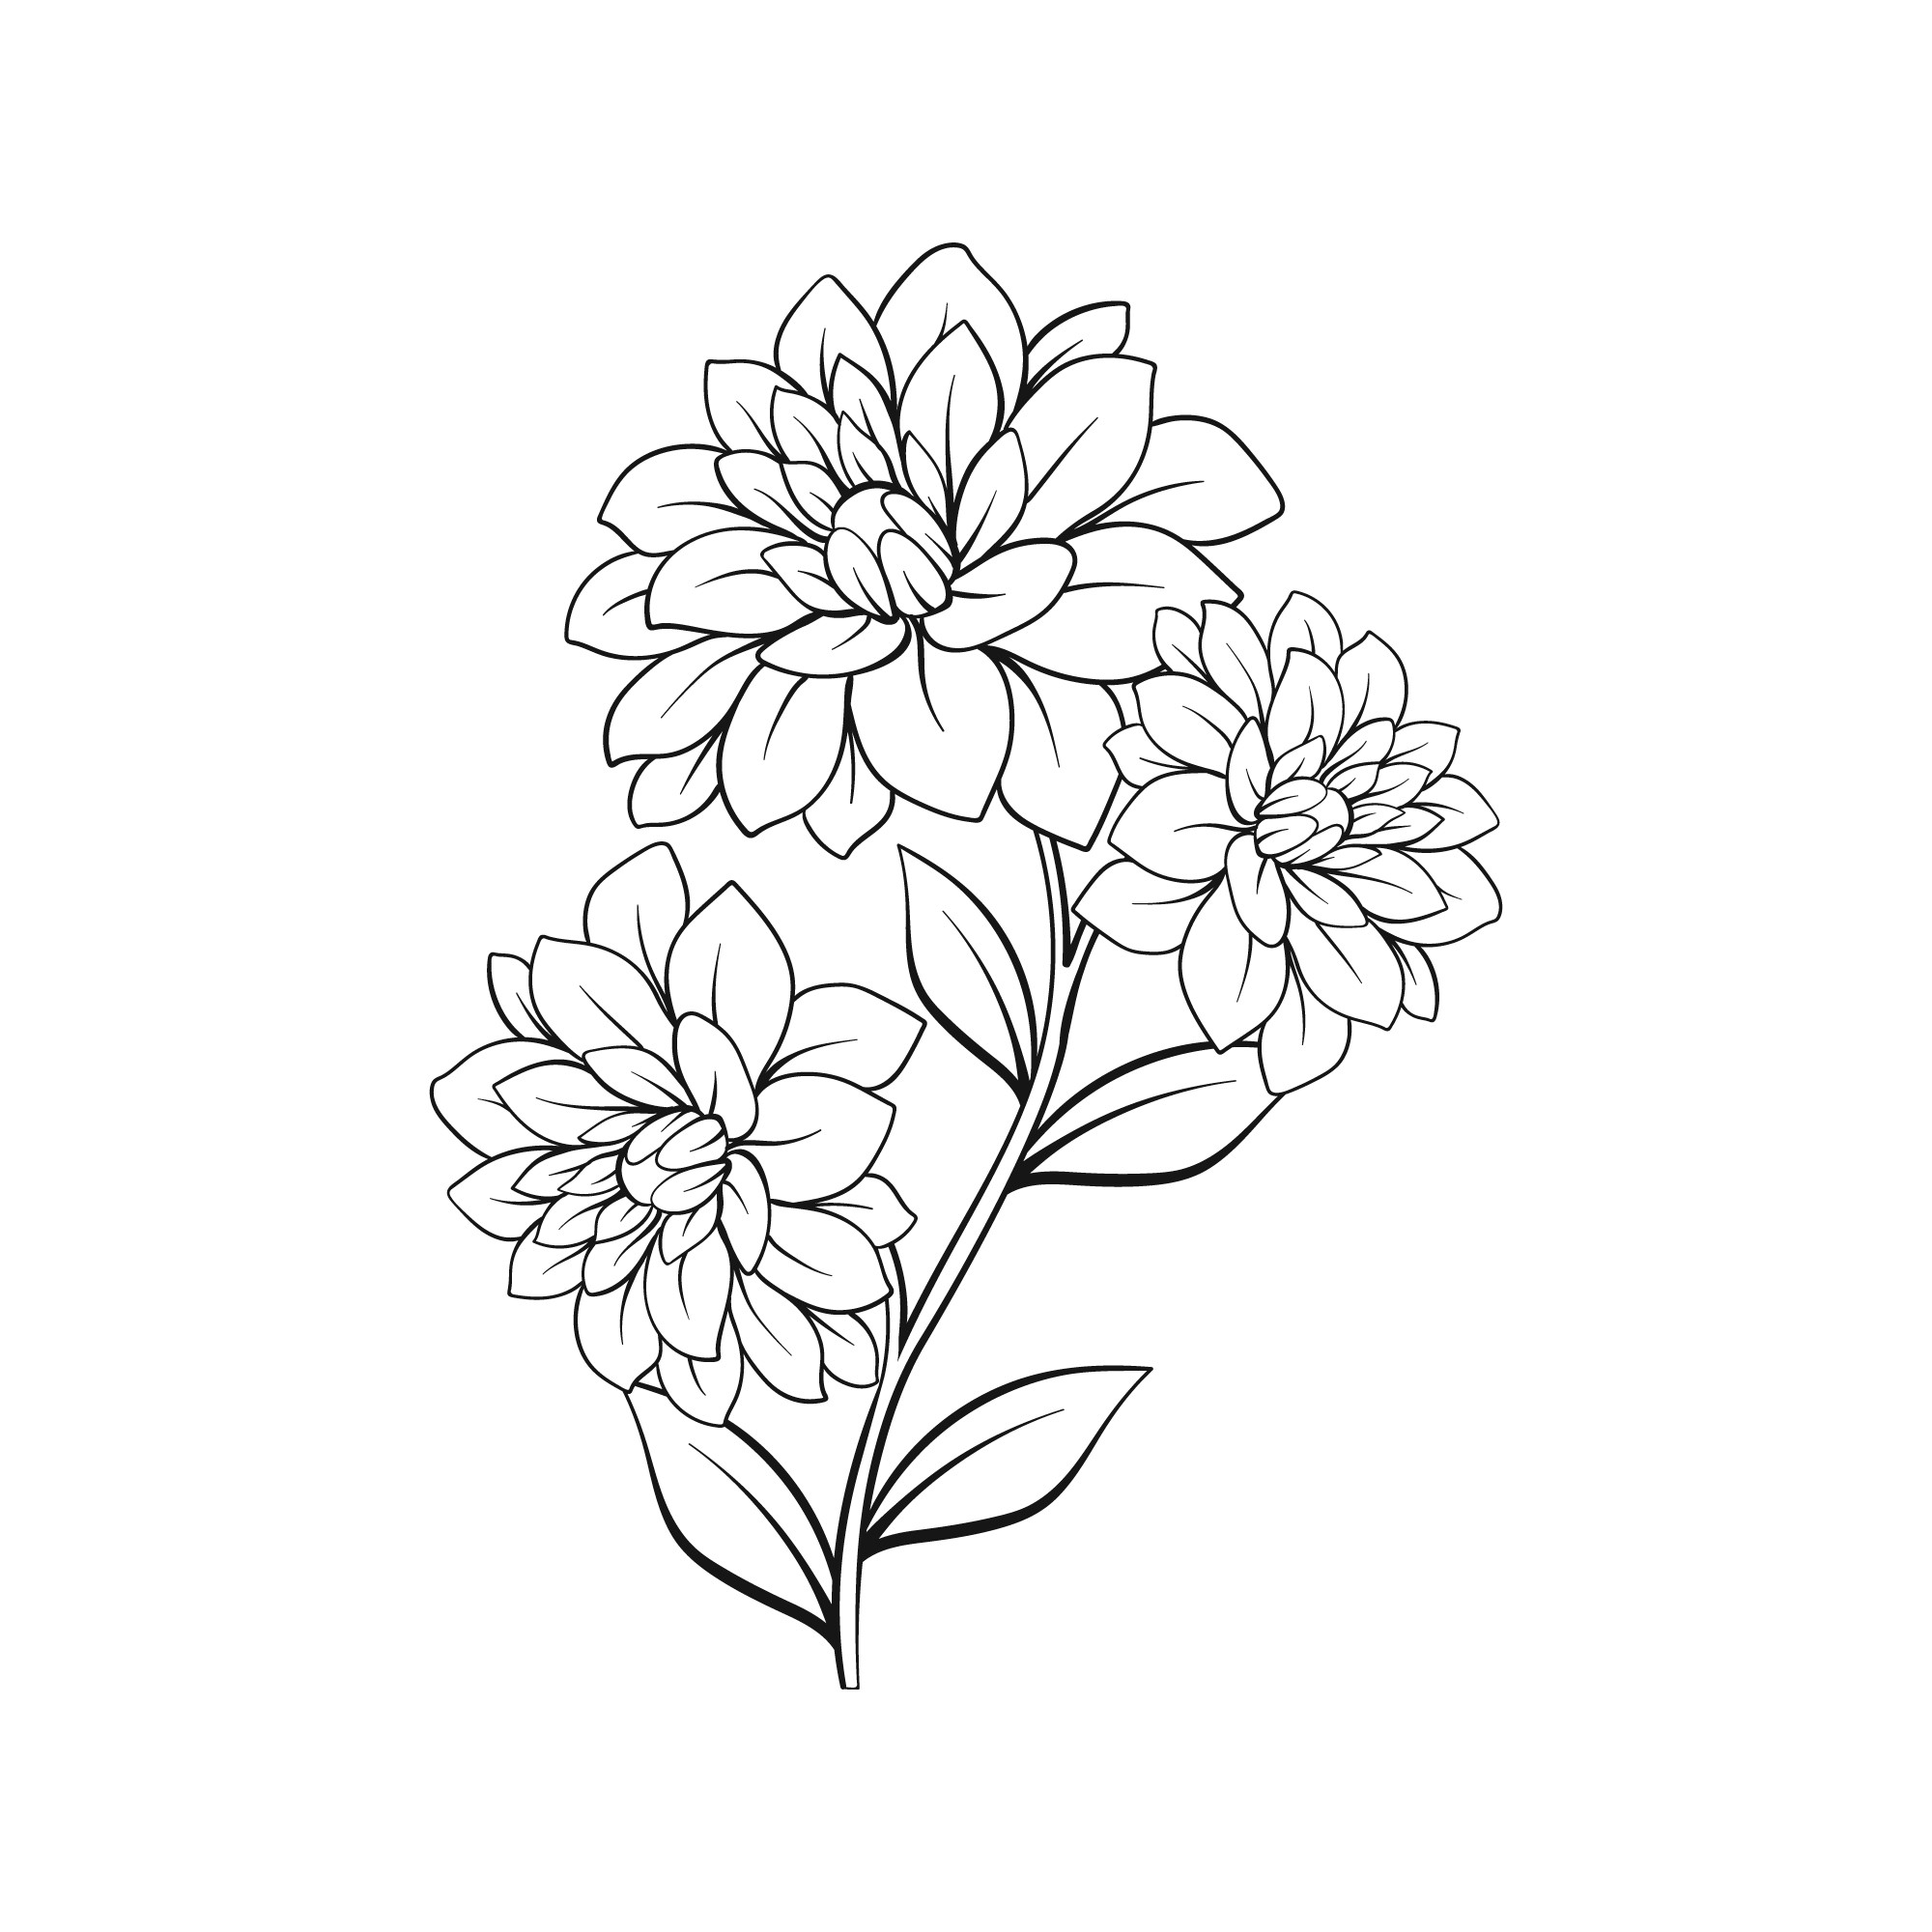 Раскраска для детей: изящный цветок георгина